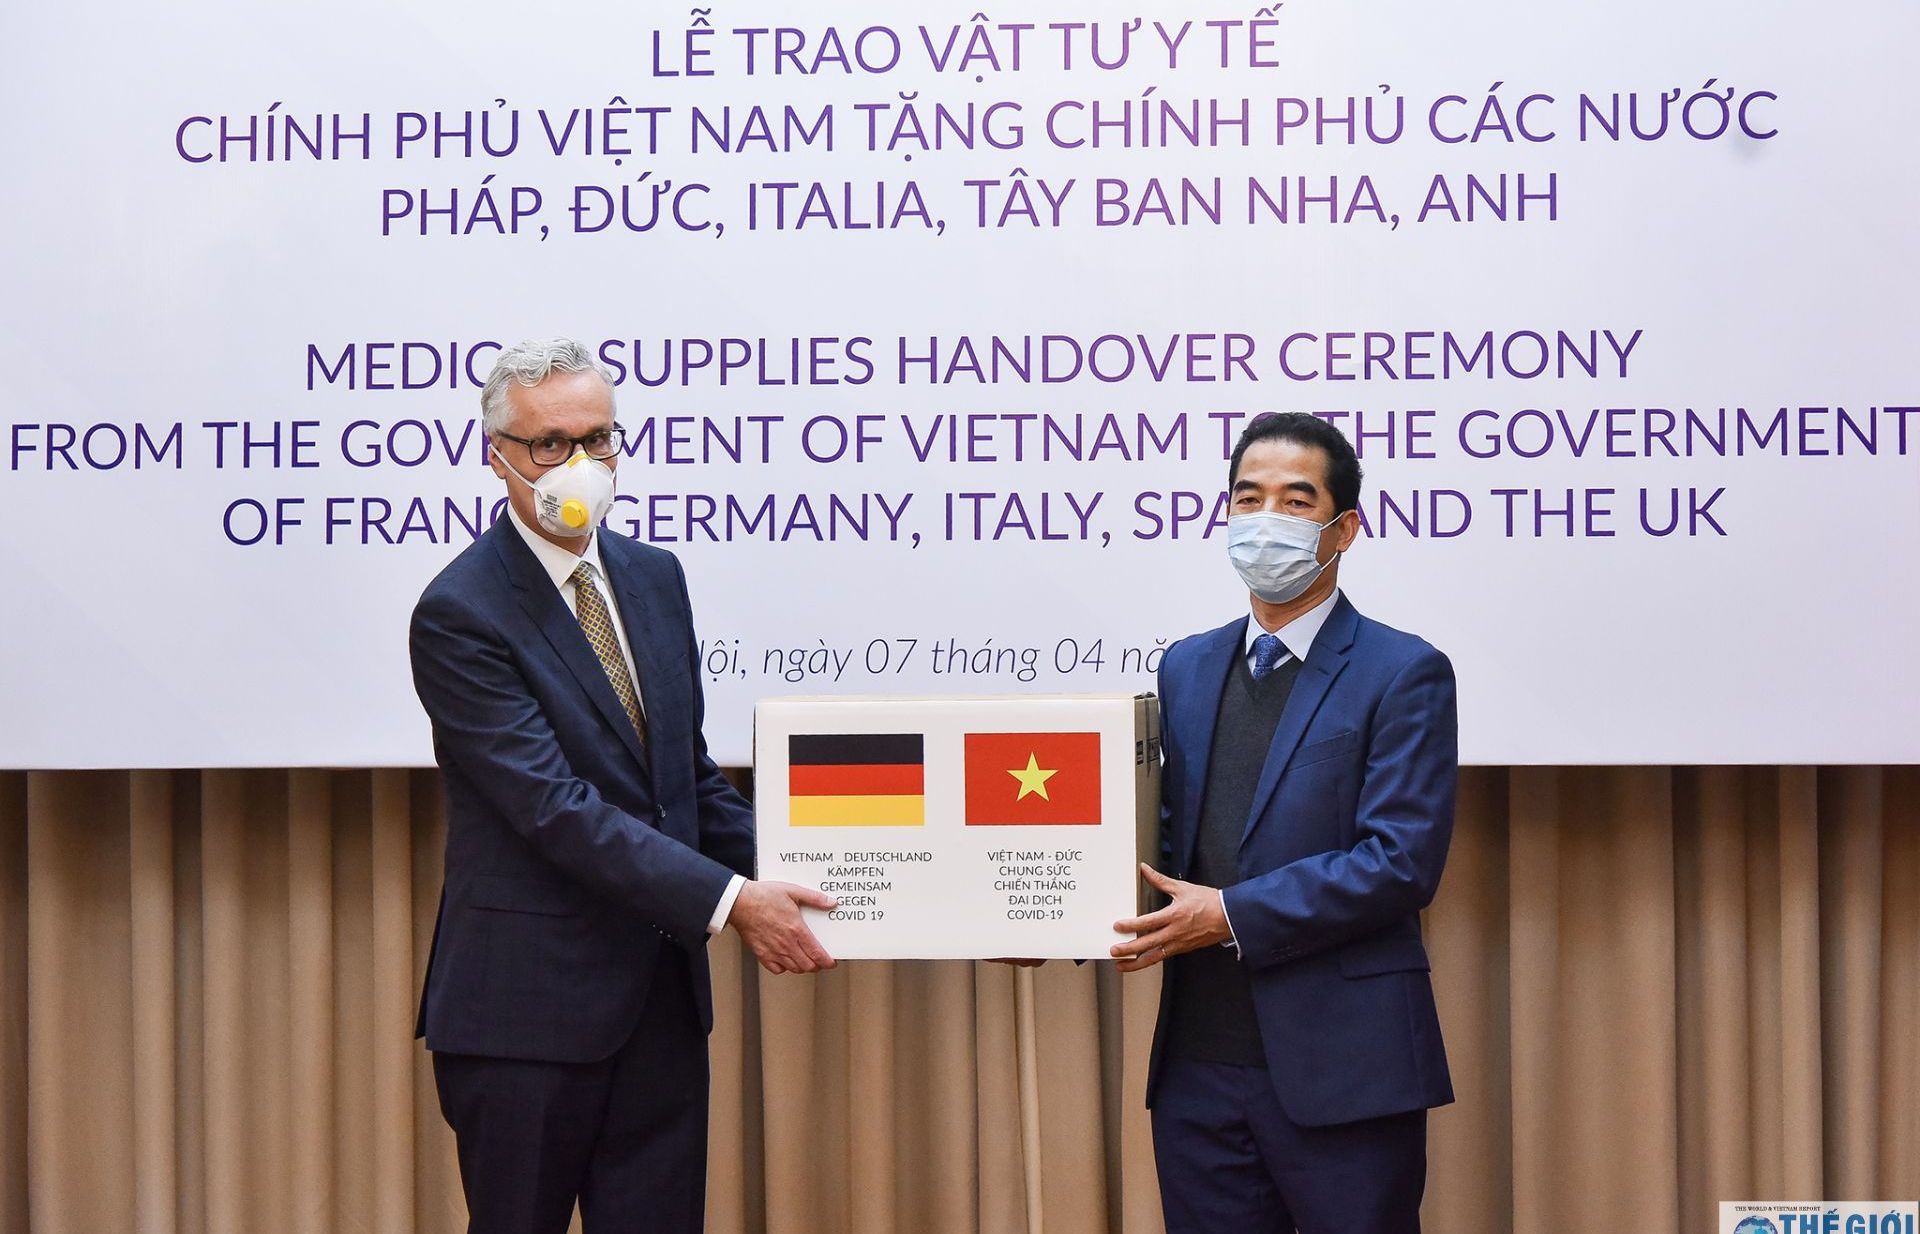 Dịch Covid-19: Bộ Ngoại giao Đức ghi nhận sự hỗ trợ của chính phủ và nhân dân Việt Nam